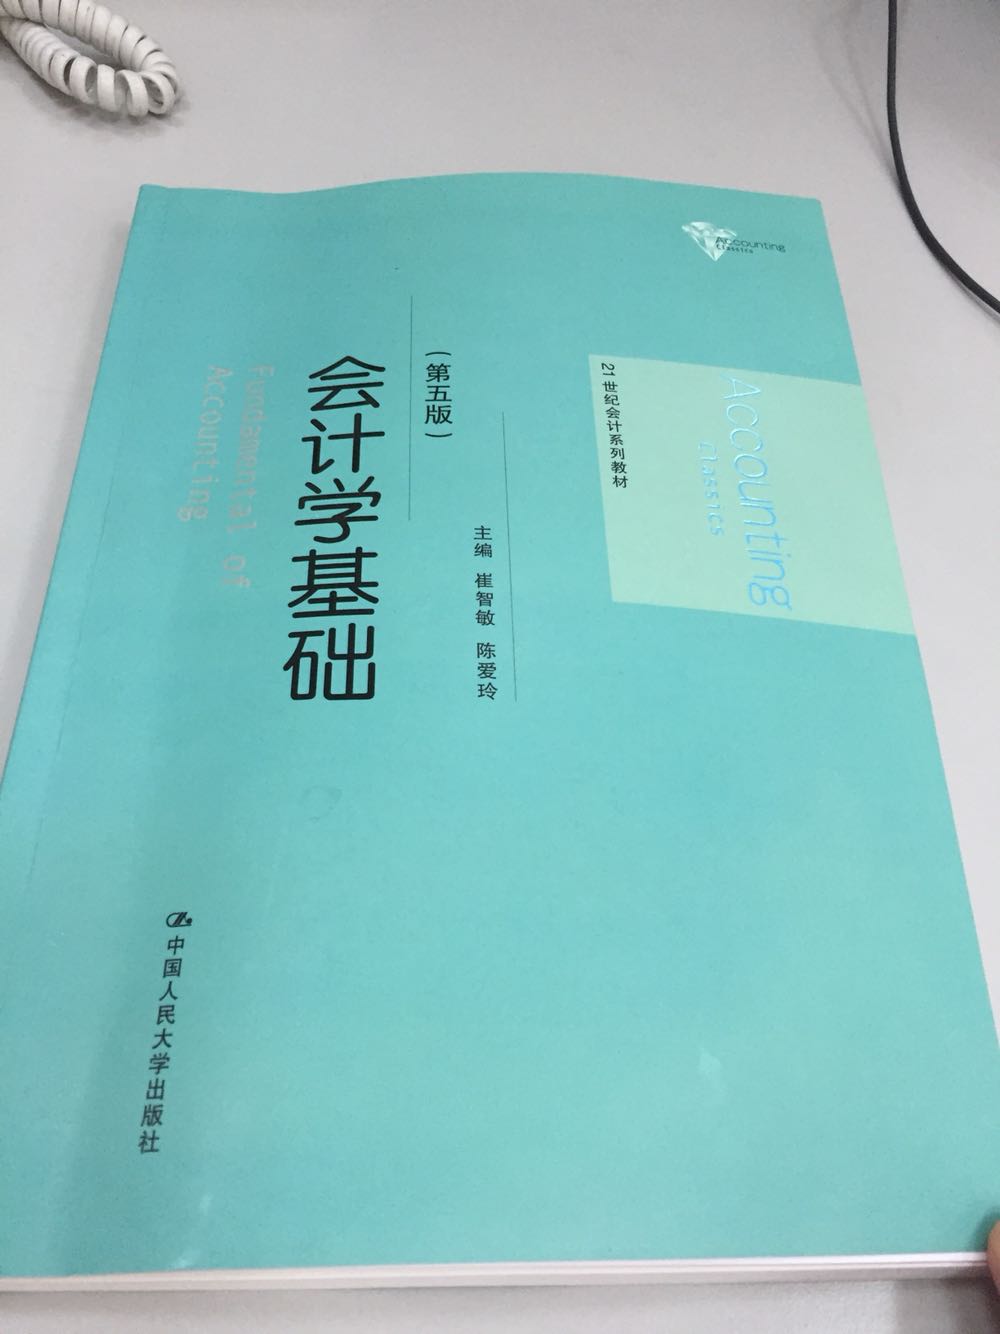 超级好的一本书籍，中国人民大学出版社出版，权威正版。